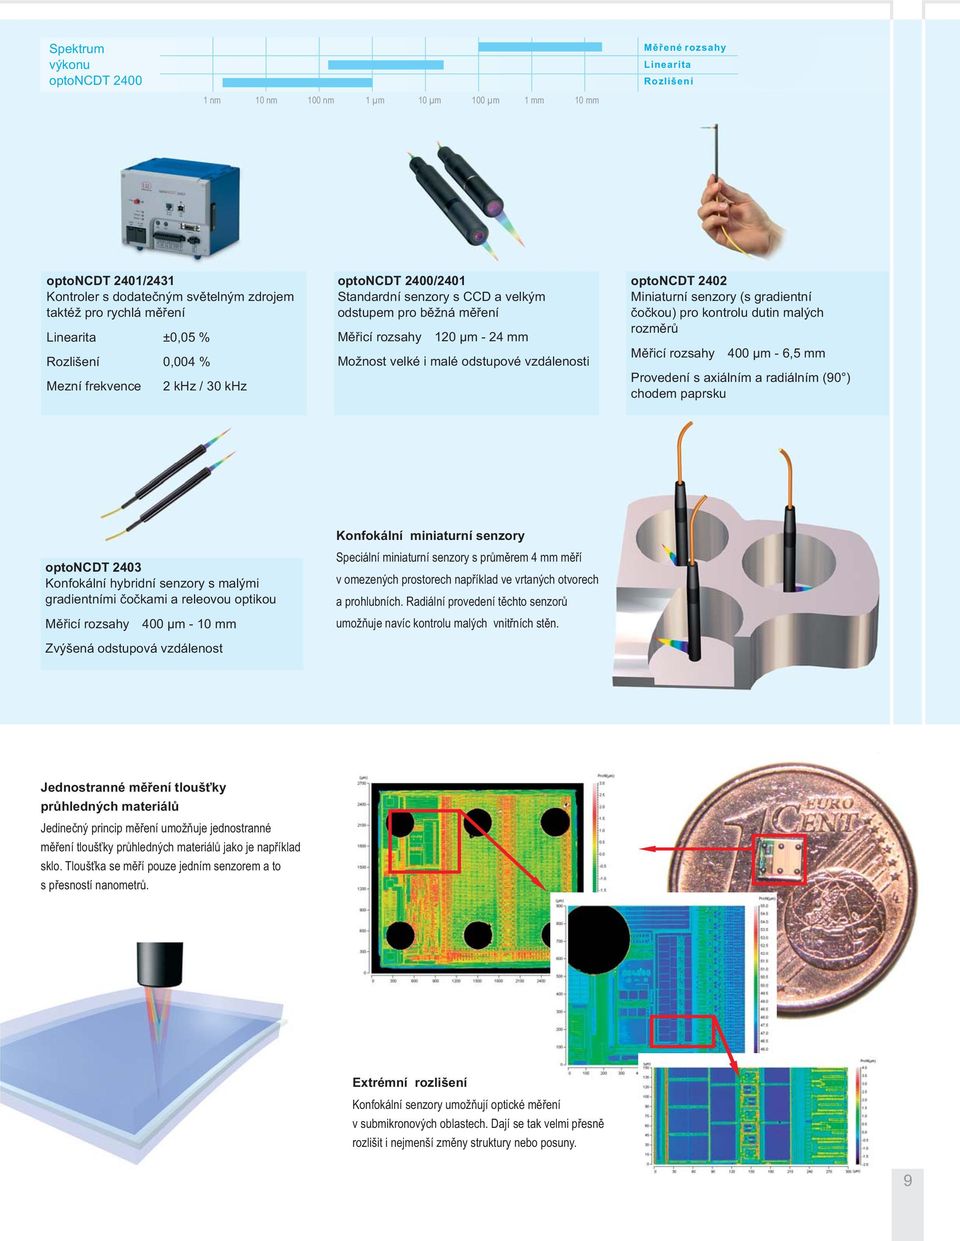 odstupové vzdálenosti optoncdt 2402 Miniaturní senzory (s gradientní čočkou) pro kontrolu dutin malých rozměrů Měřicí rozsahy 400 µm - 6,5 mm Provedení s axiálním a radiálním (90 ) chodem paprsku